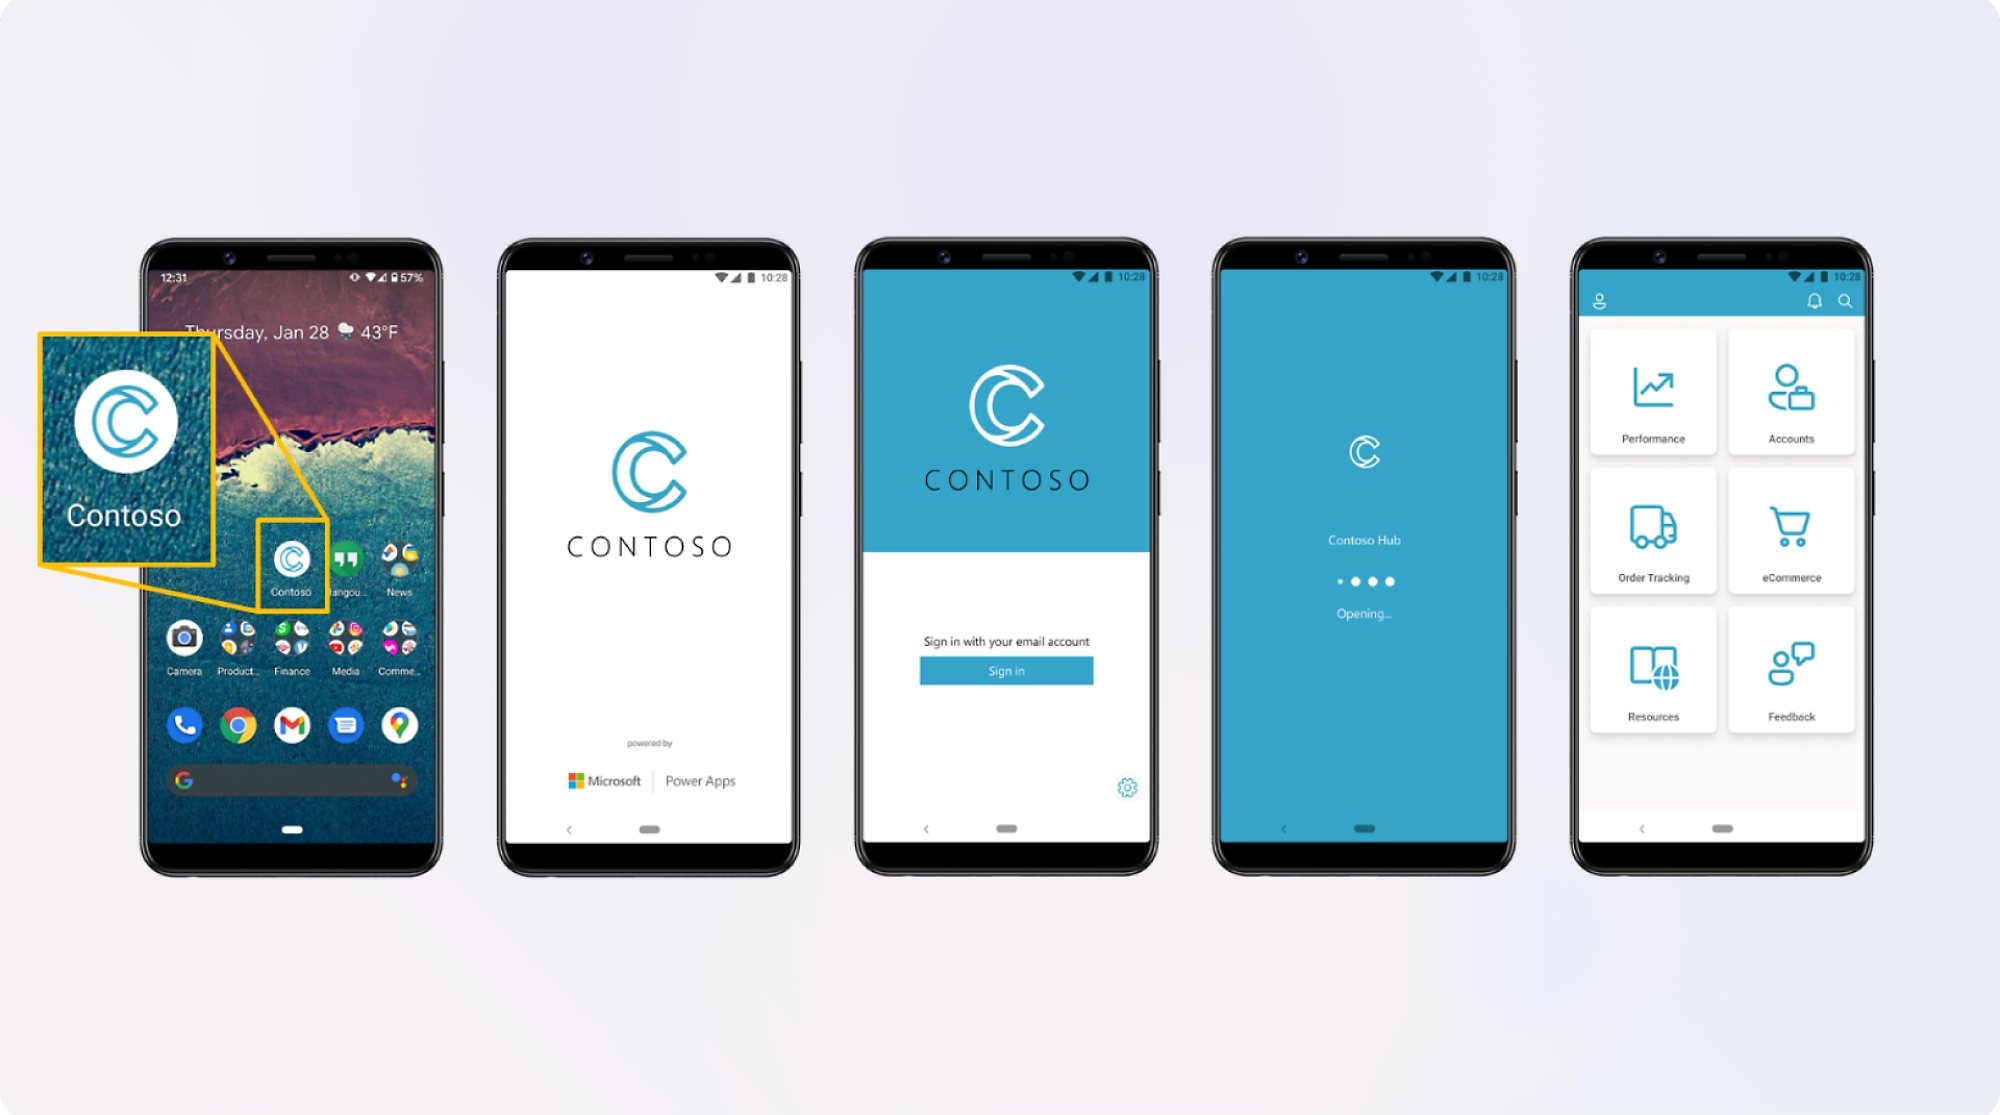 五部顯示 "contoso" 應用程式不同畫面的智慧型手機，顯示了登入頁面、主畫面